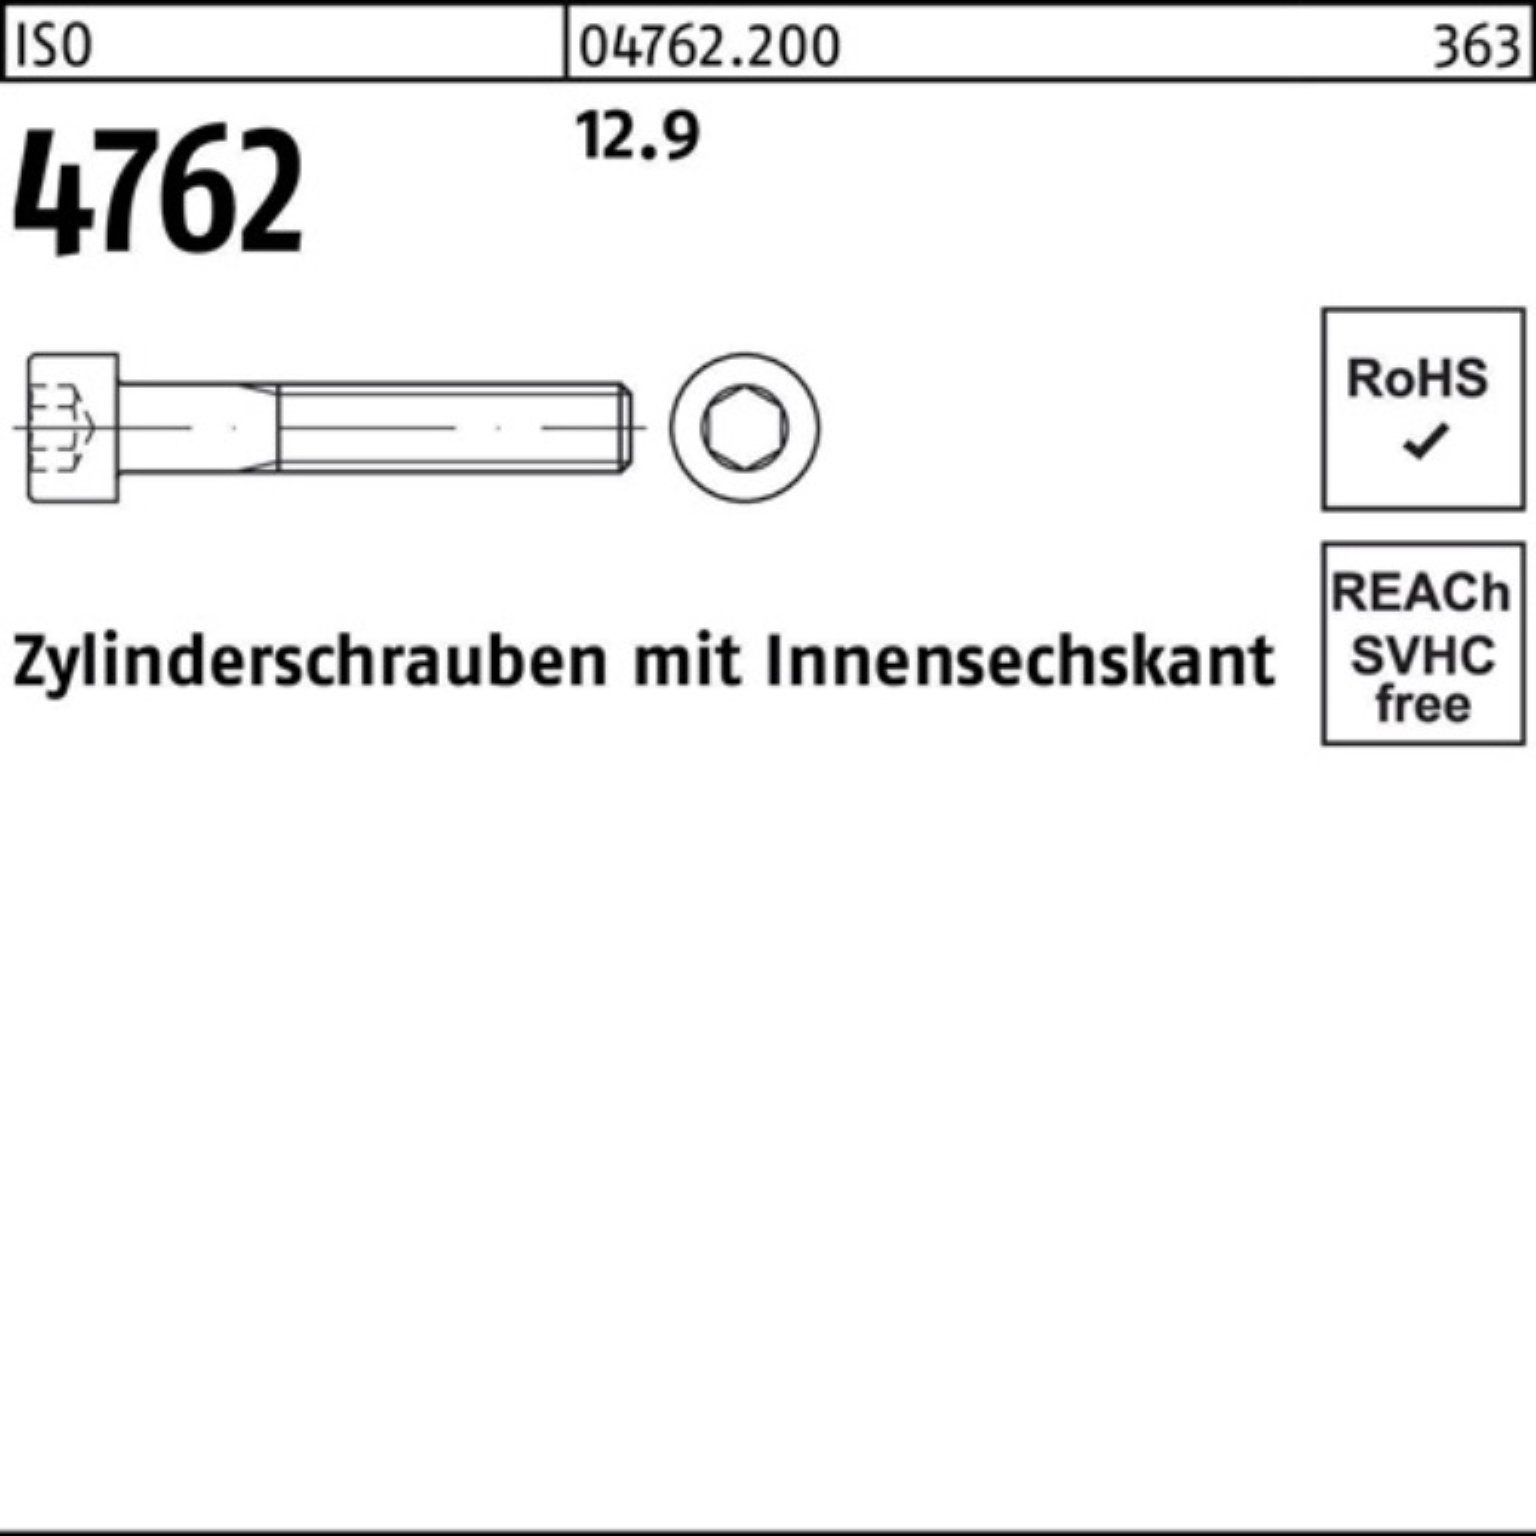 Pack Zylinderschraube Innen-6kt M12x ISO Stück Reyher 4762 100er Zylinderschraube 25 200 12.9